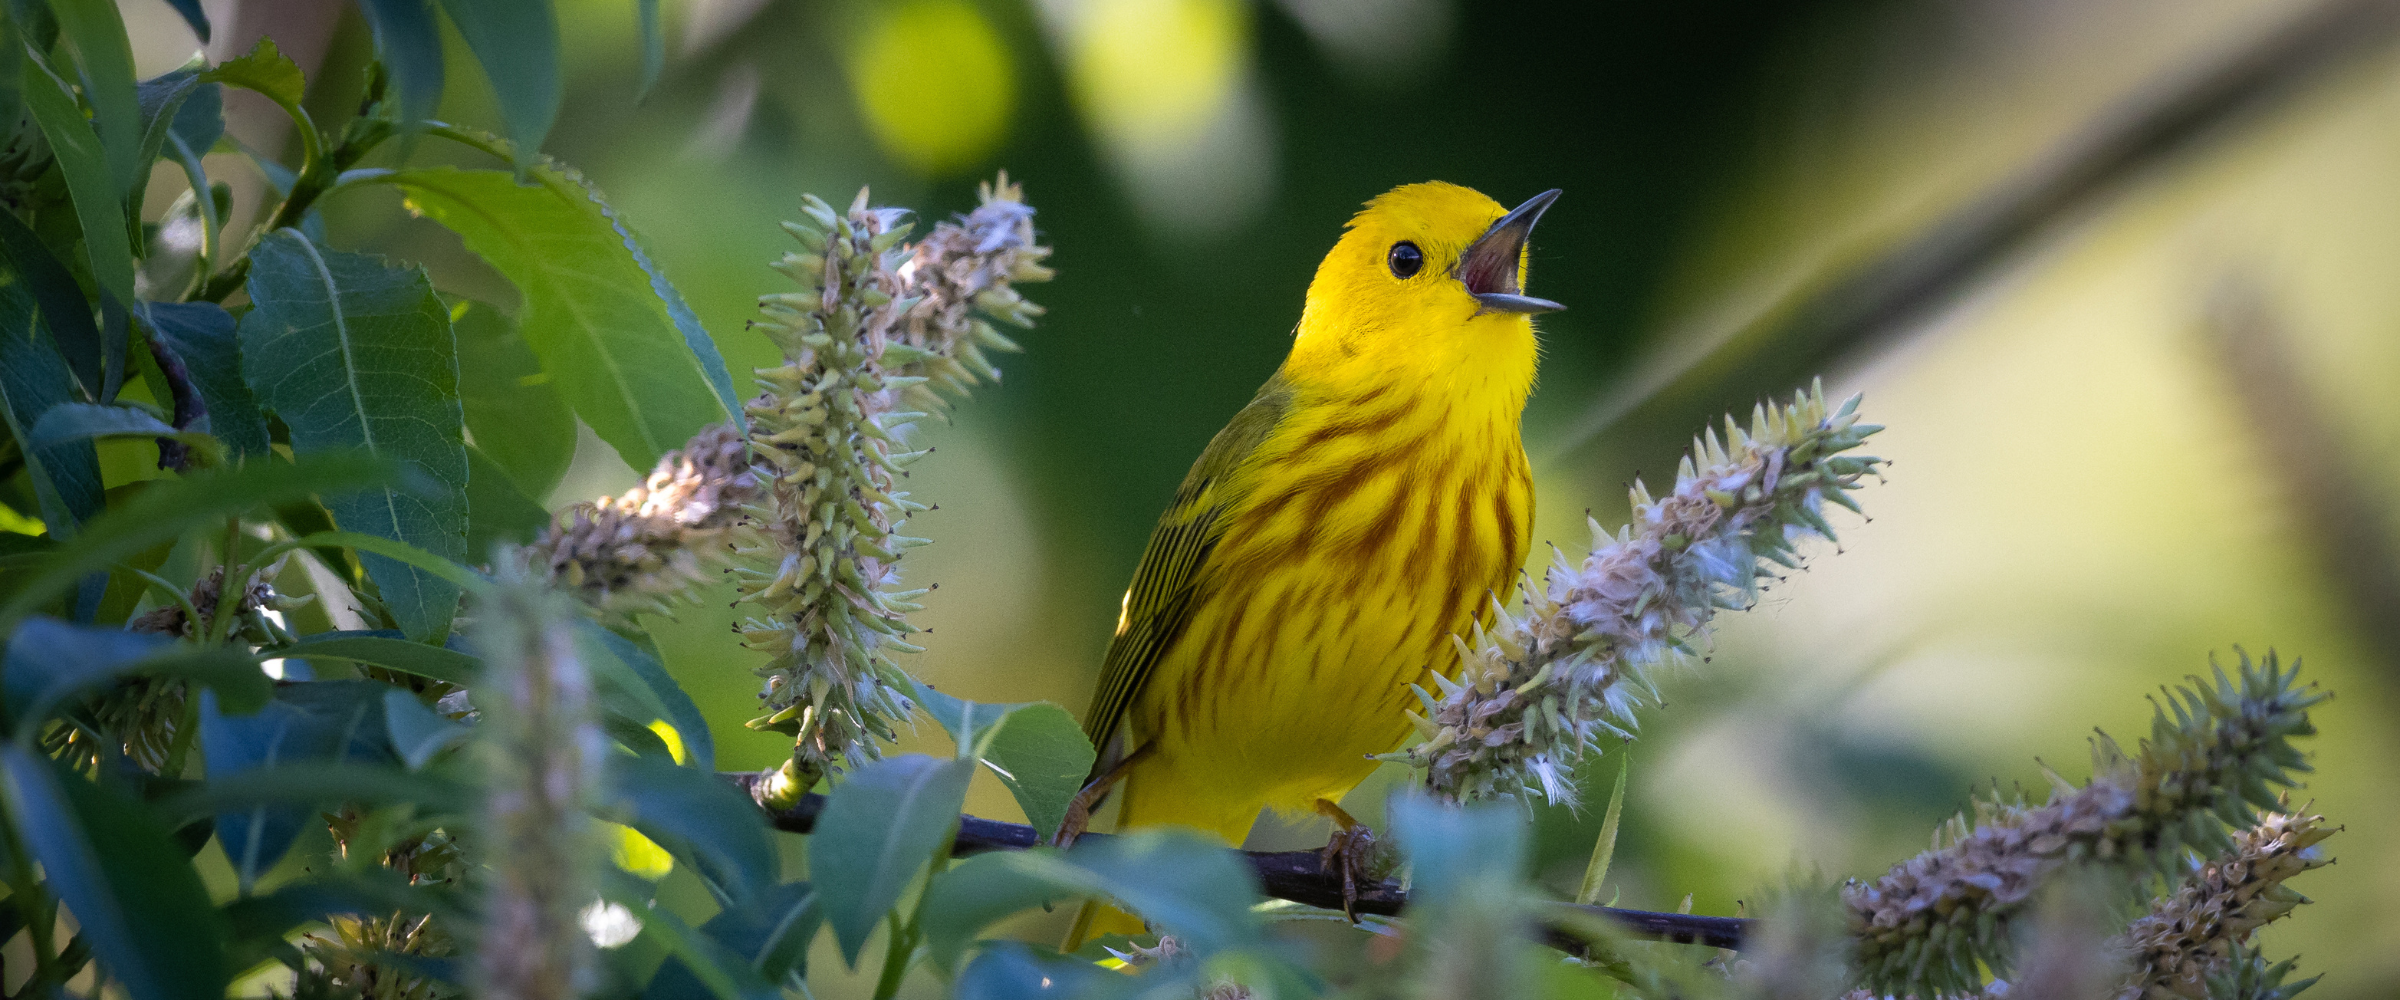 A Yellow Warbler perched in a leafy tree, beak open as it sings.